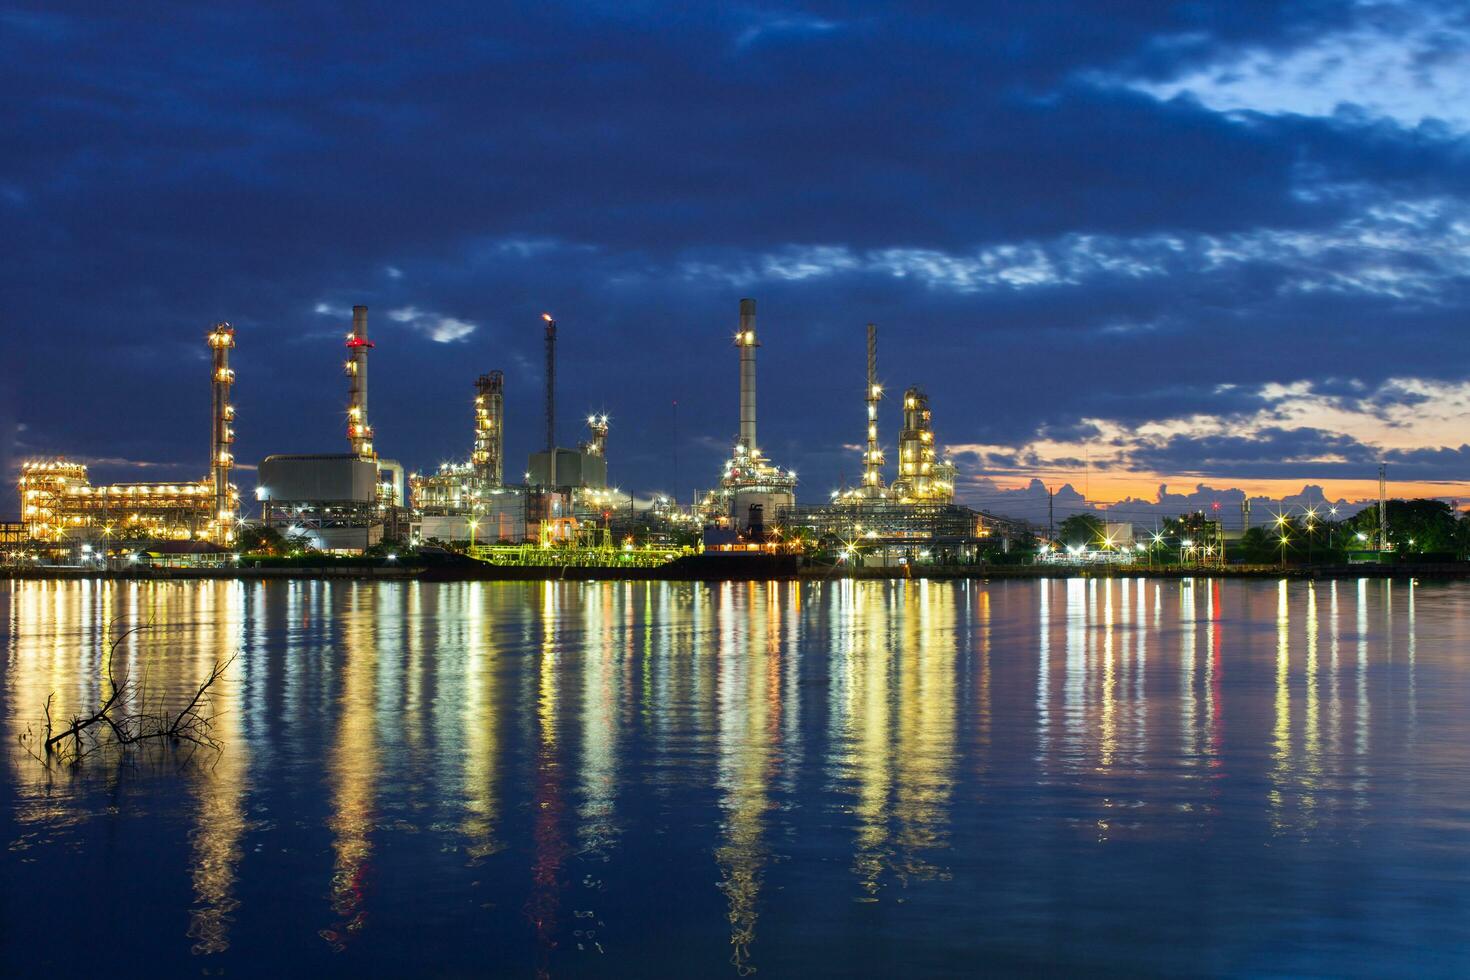 pétrole raffinerie industrie réflexion sur l'eau photo